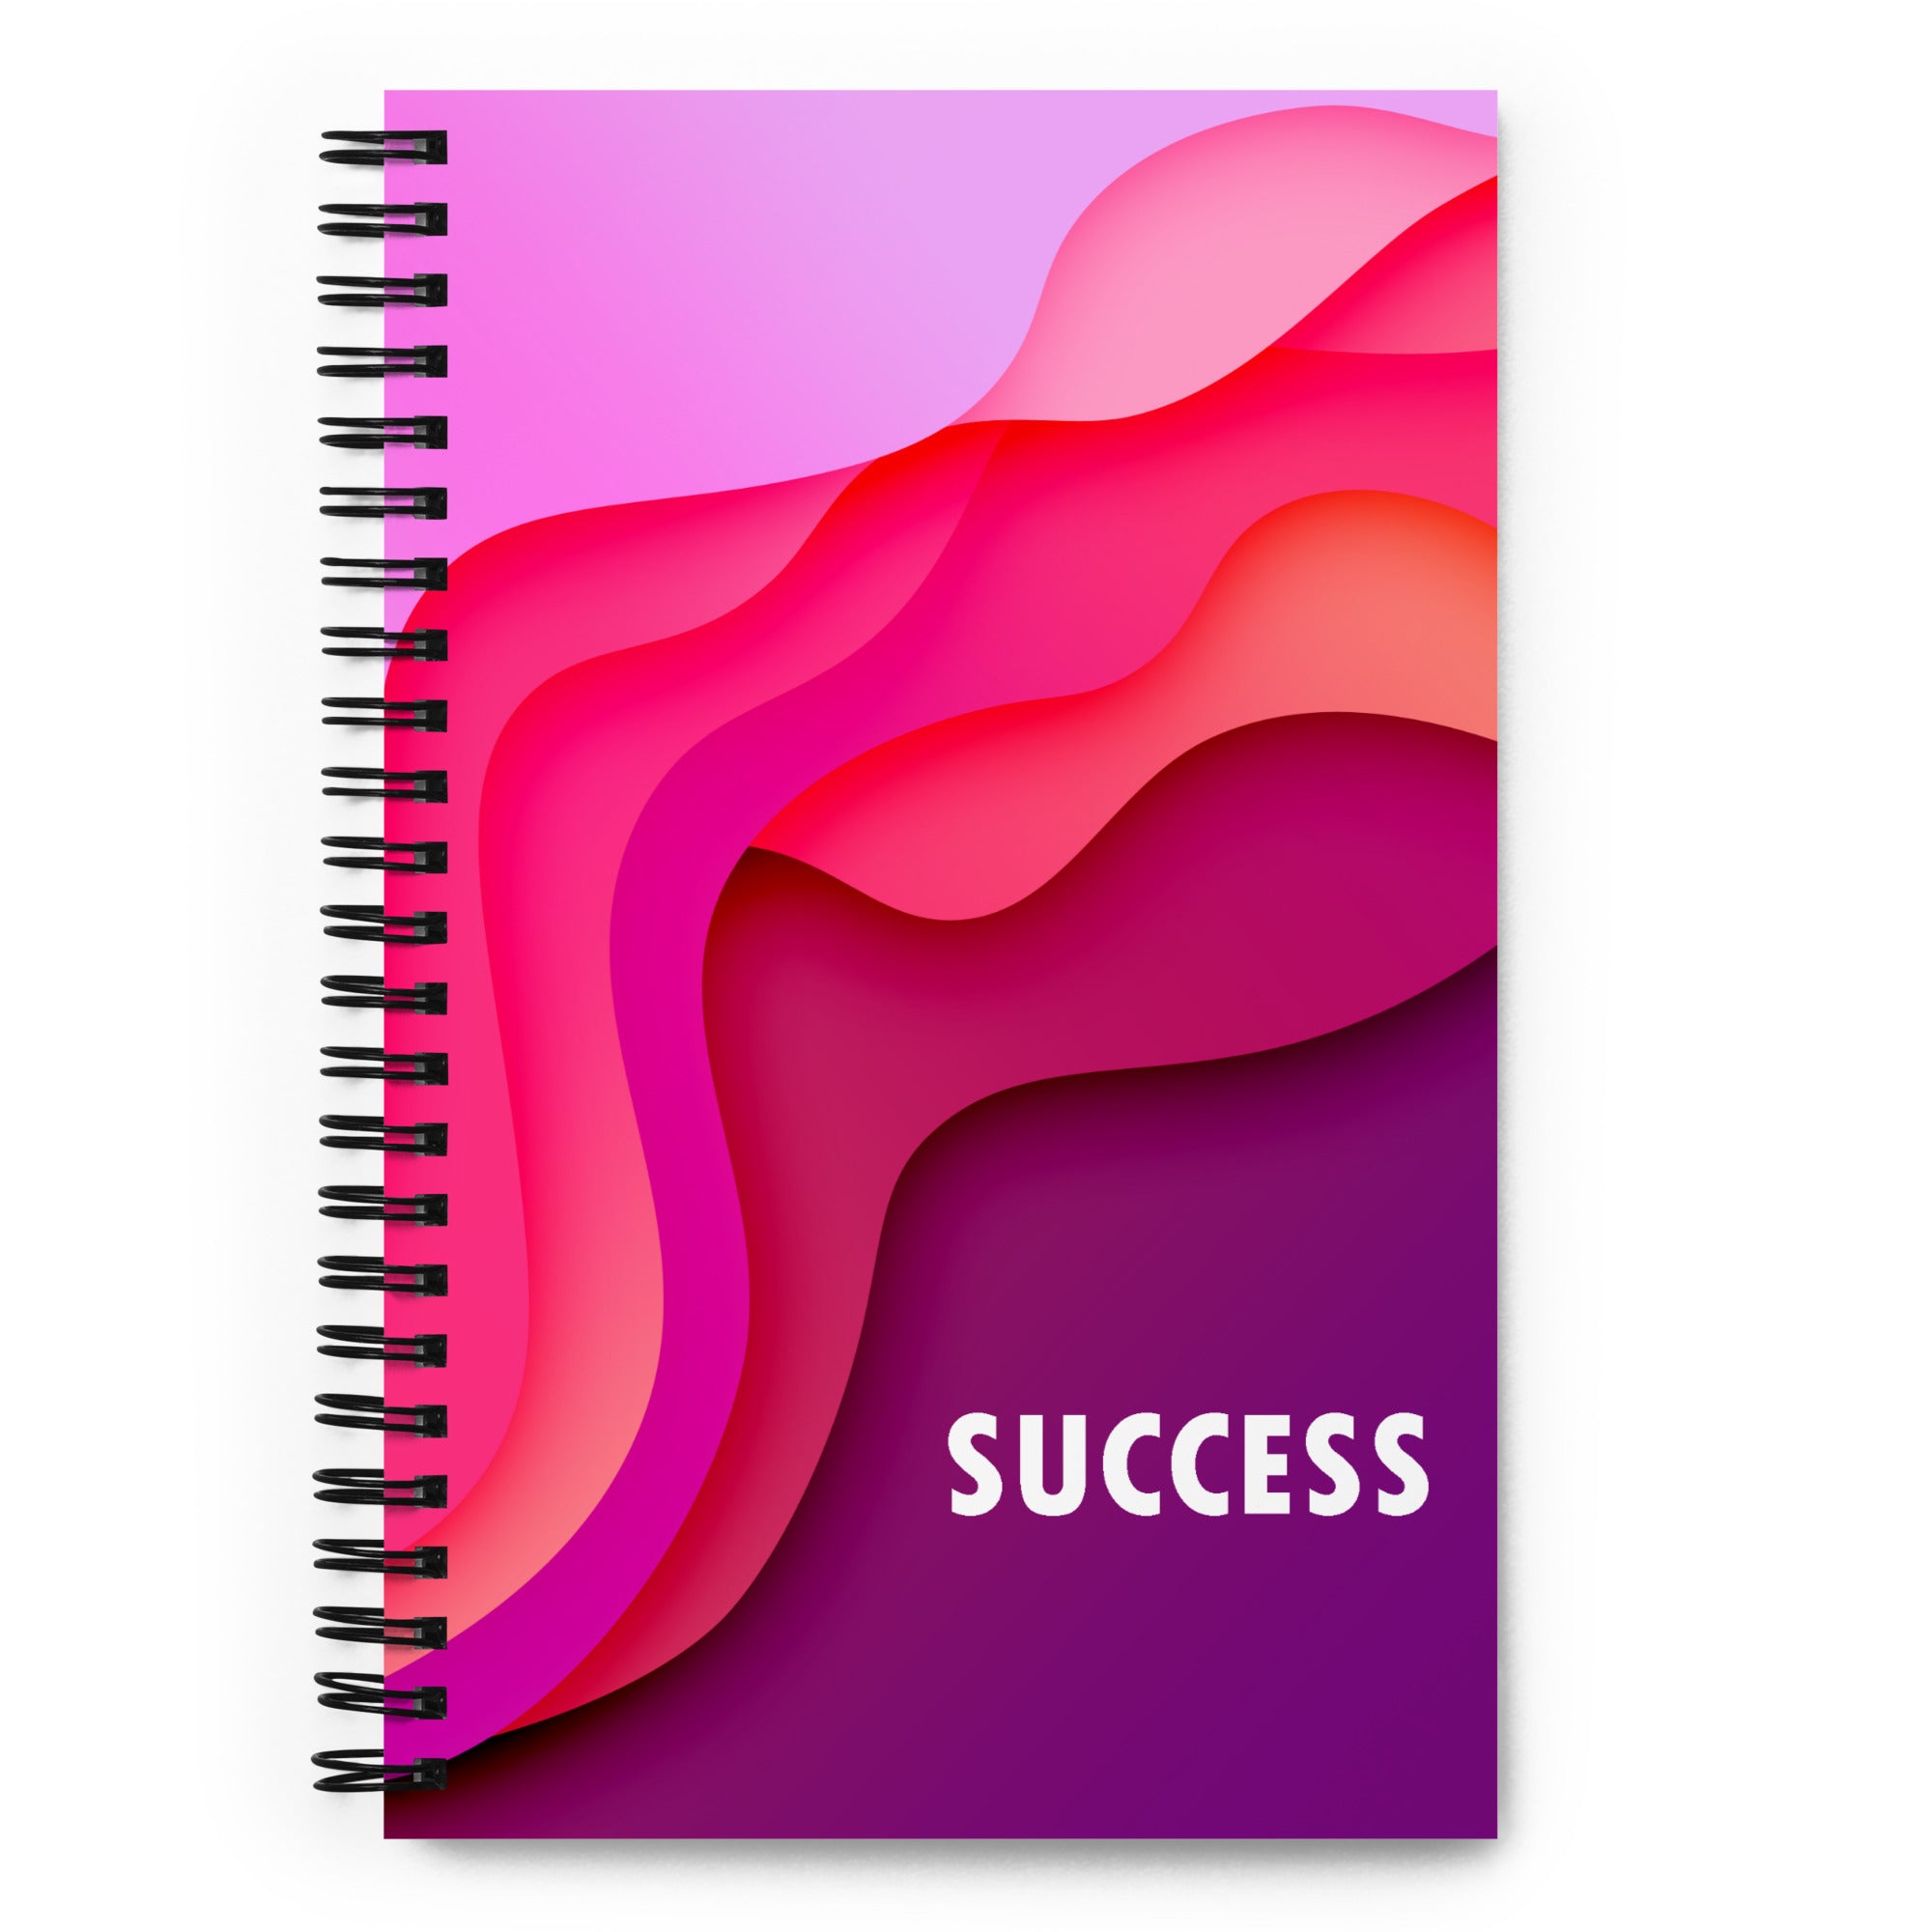 SUCCESS SPIRAL NOTEBOOK SN007